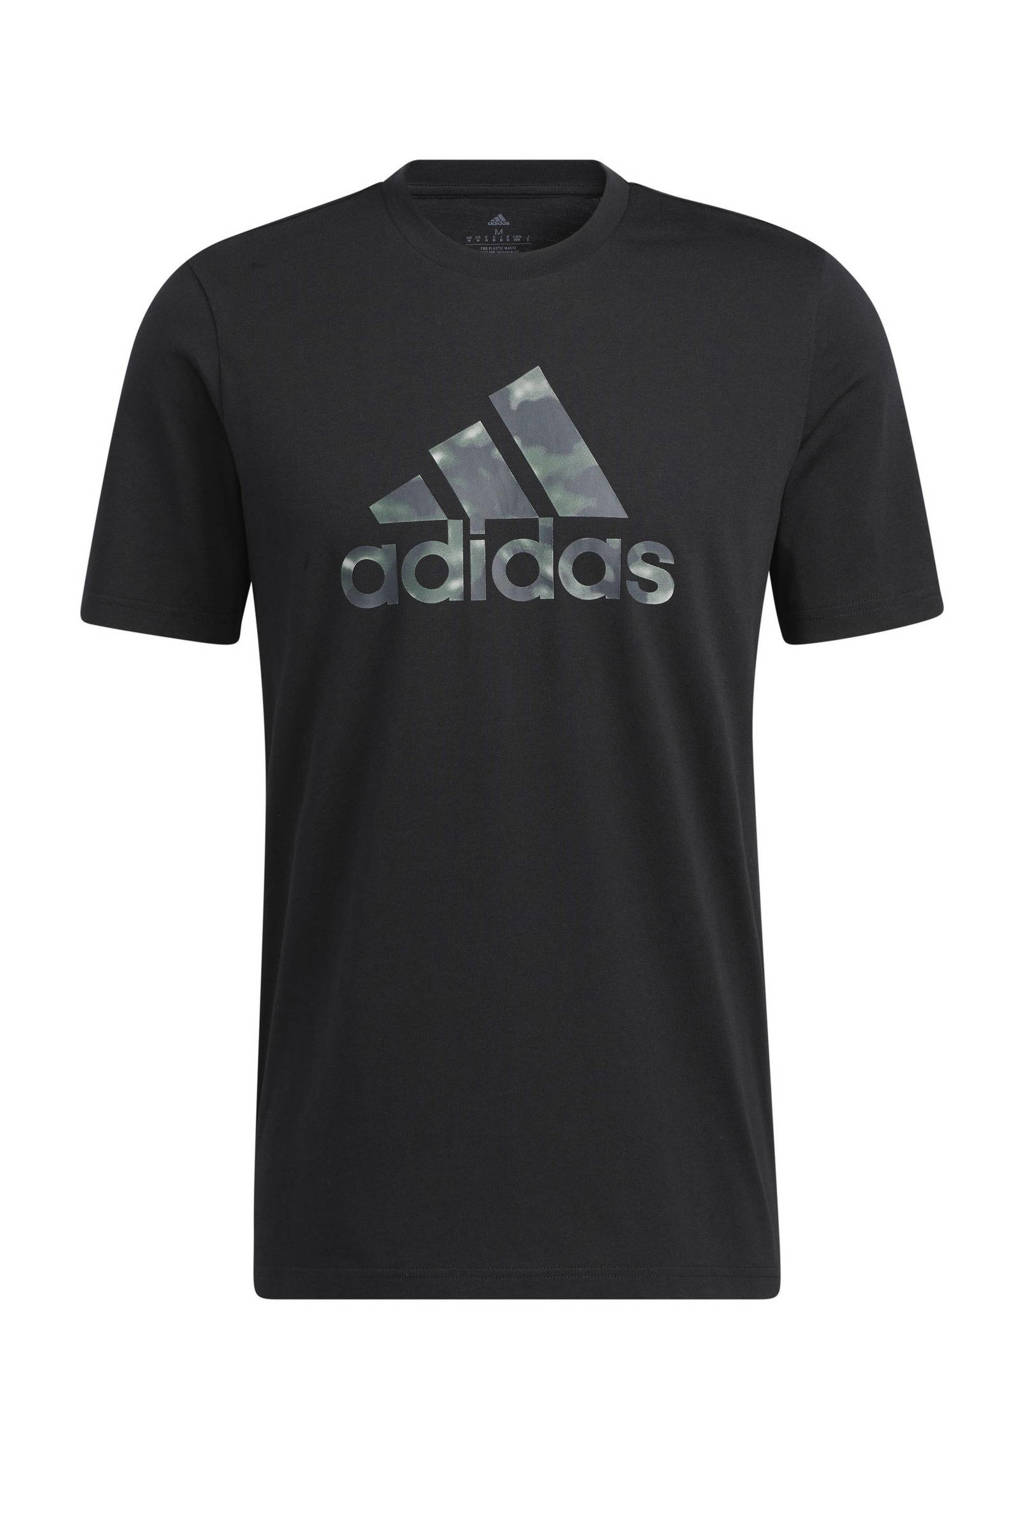 adidas Performance   sport T-shirt zwart